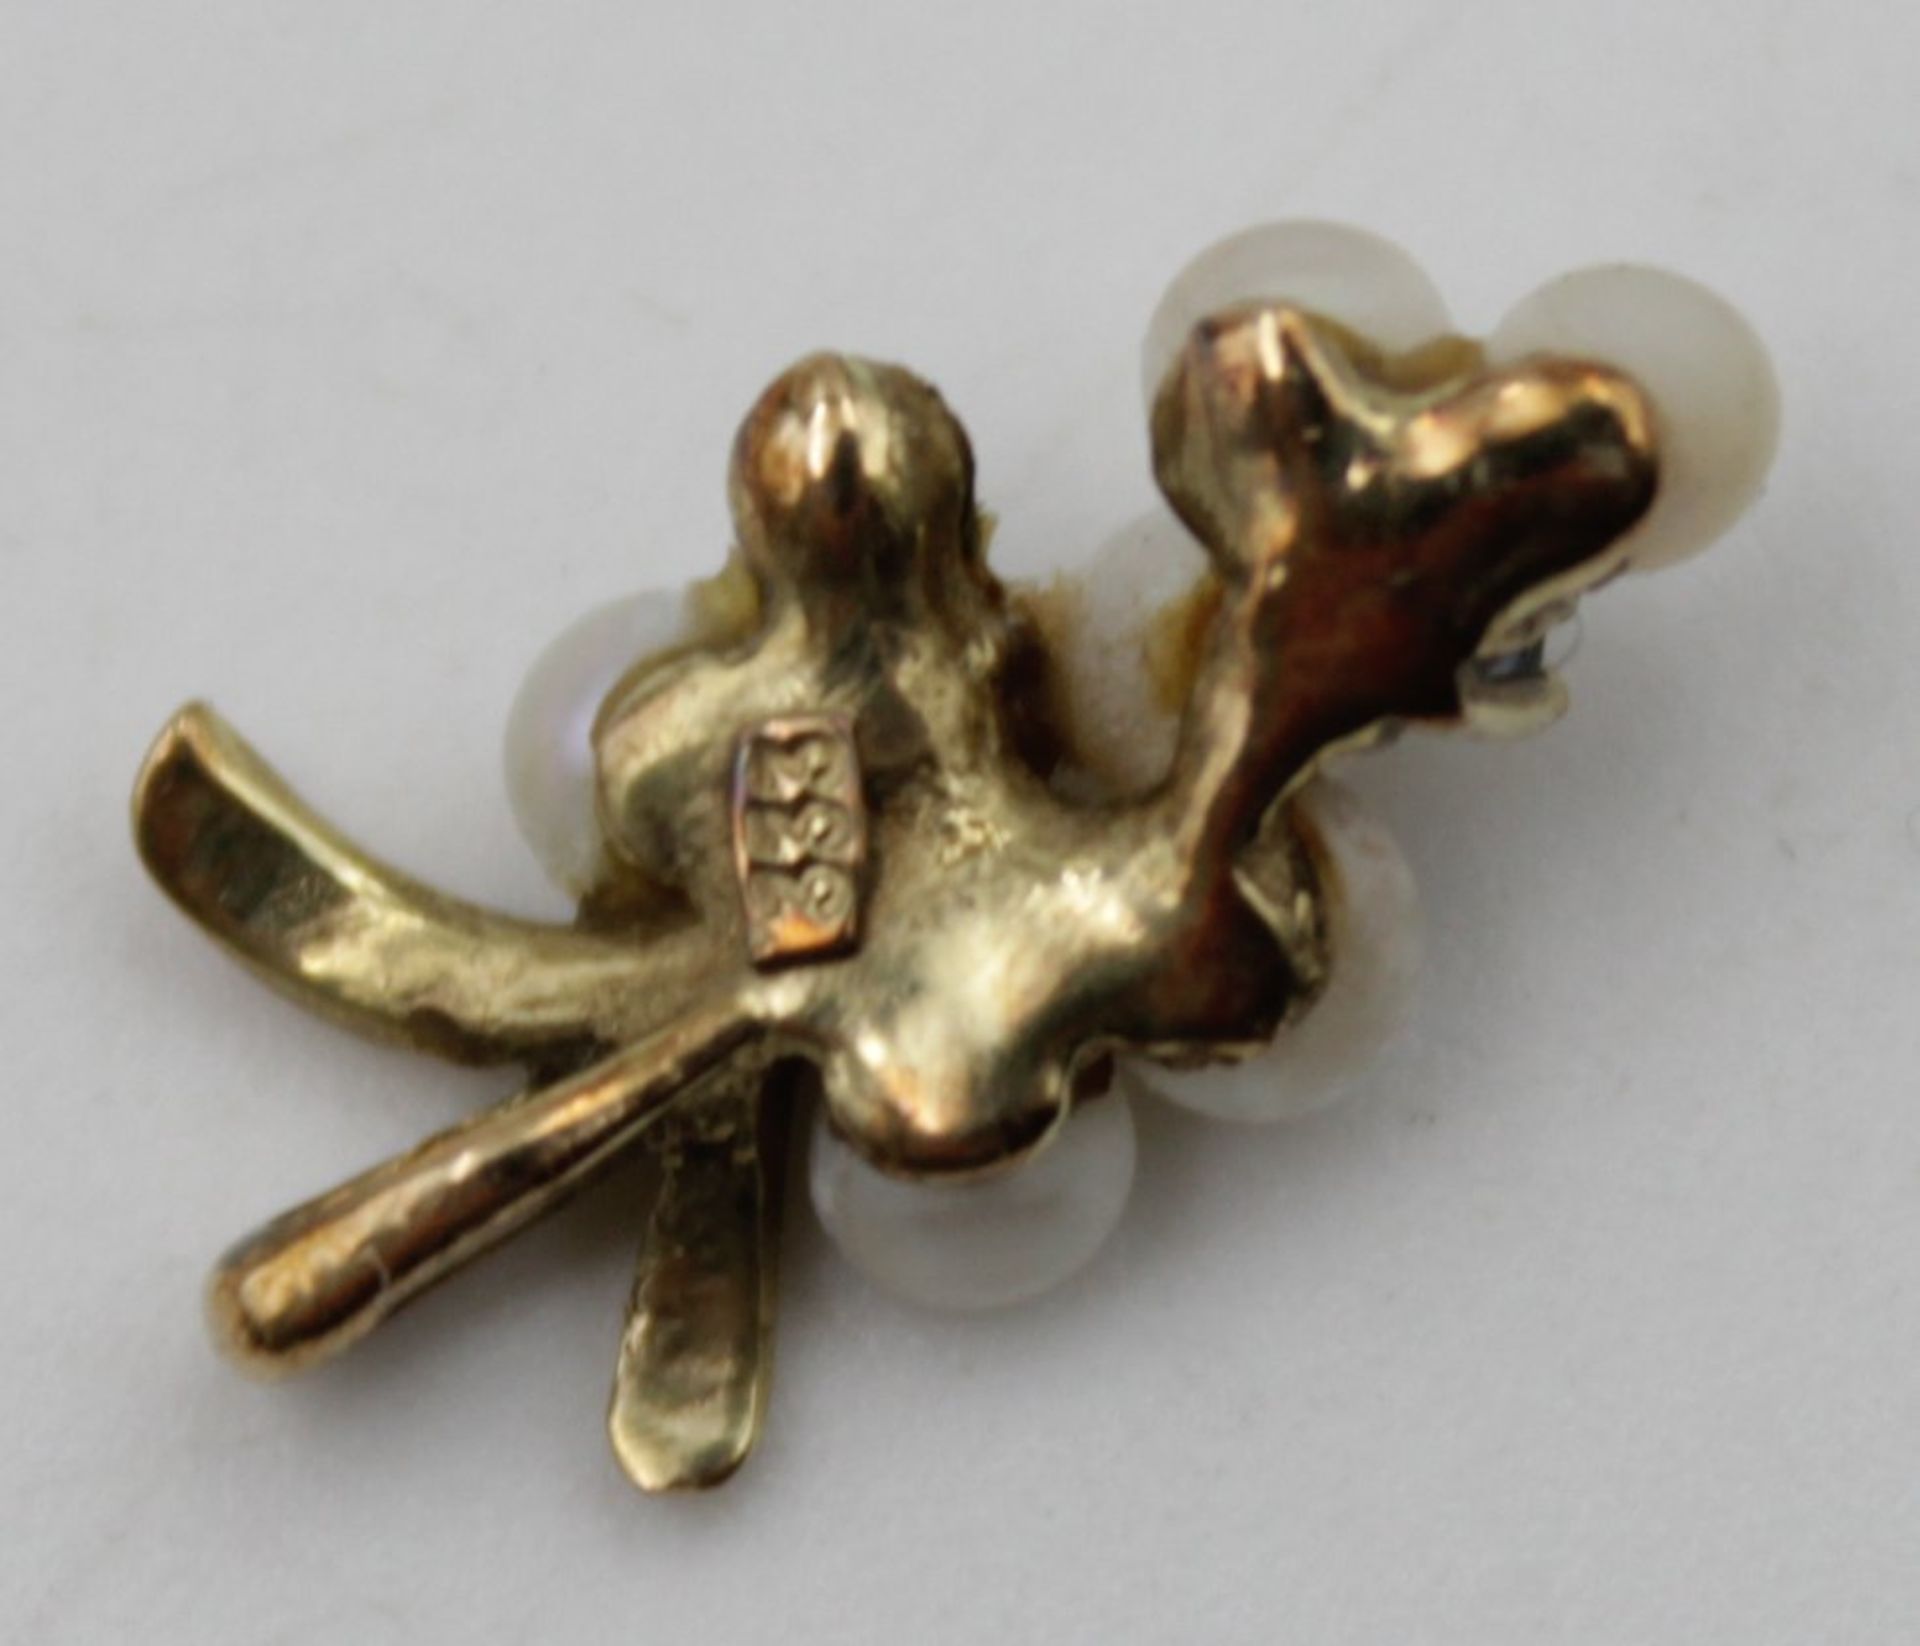 Anhänger Gold 333 mit Perlen Besatz u. Salire , eine Perle fehlt , L 1,7 cm zusammen 1,1gr. - Bild 3 aus 4